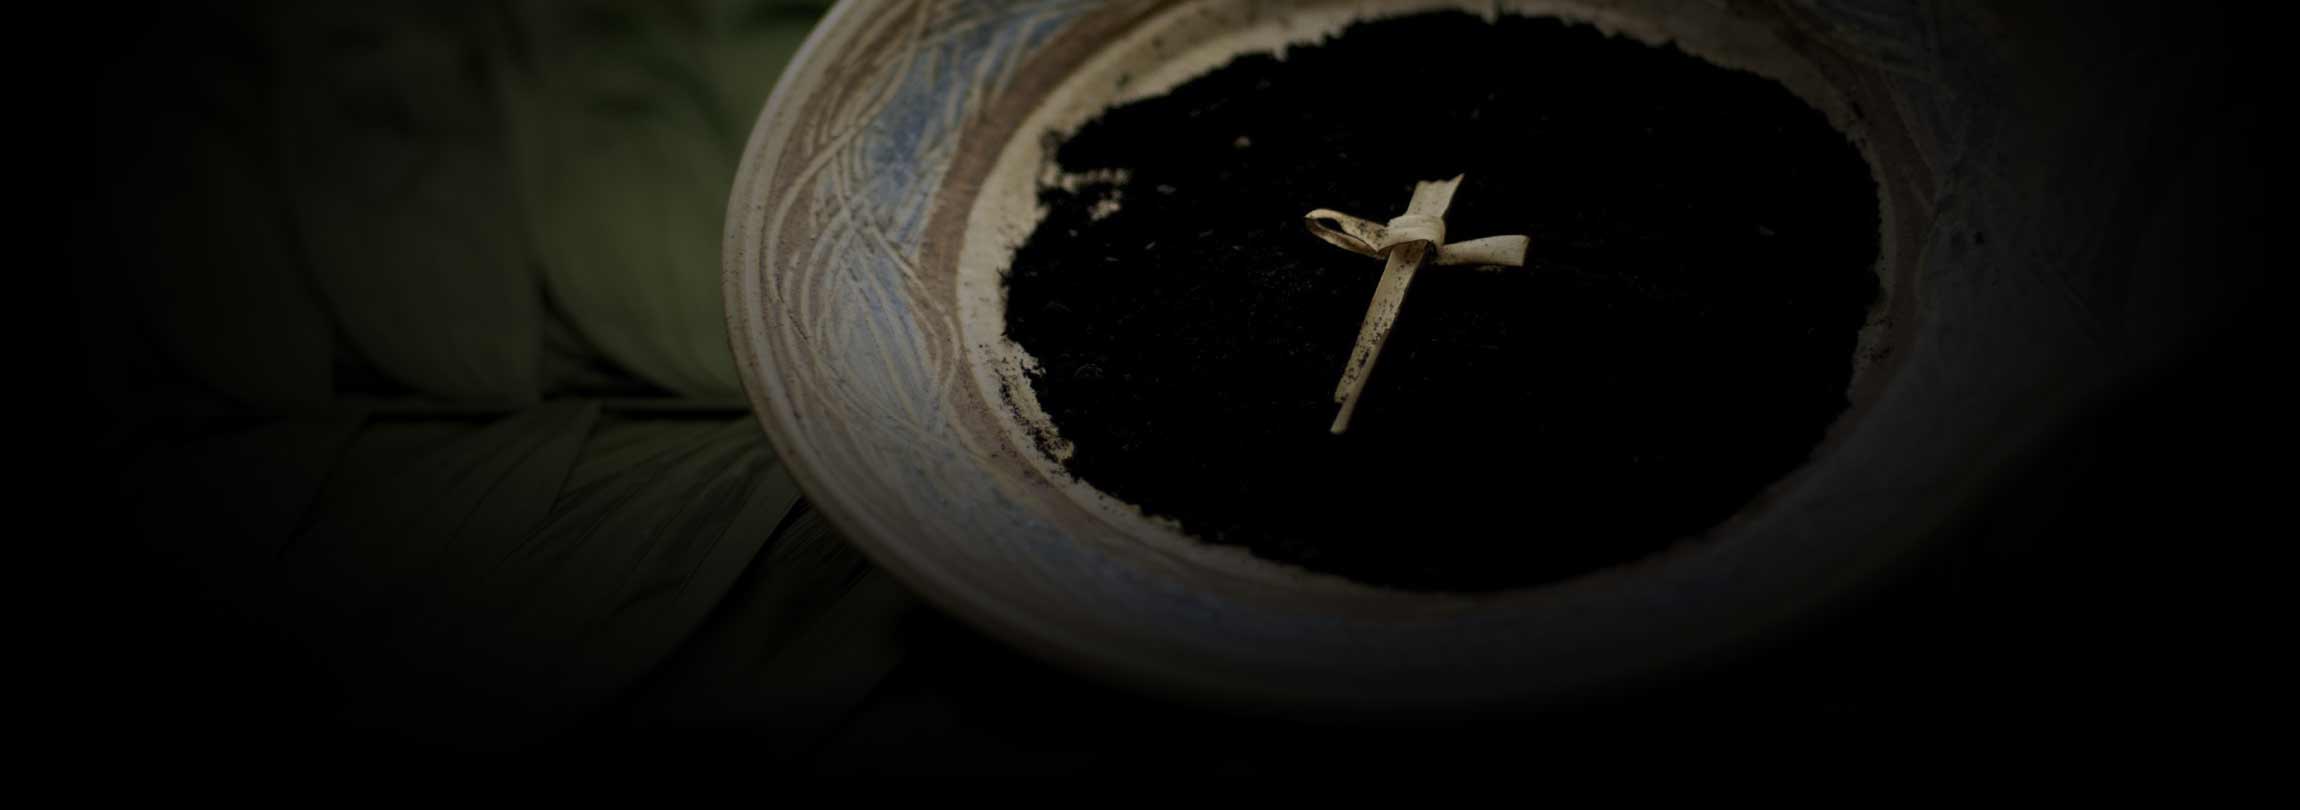 Quarta-feira de Cinzas: liturgia de morte